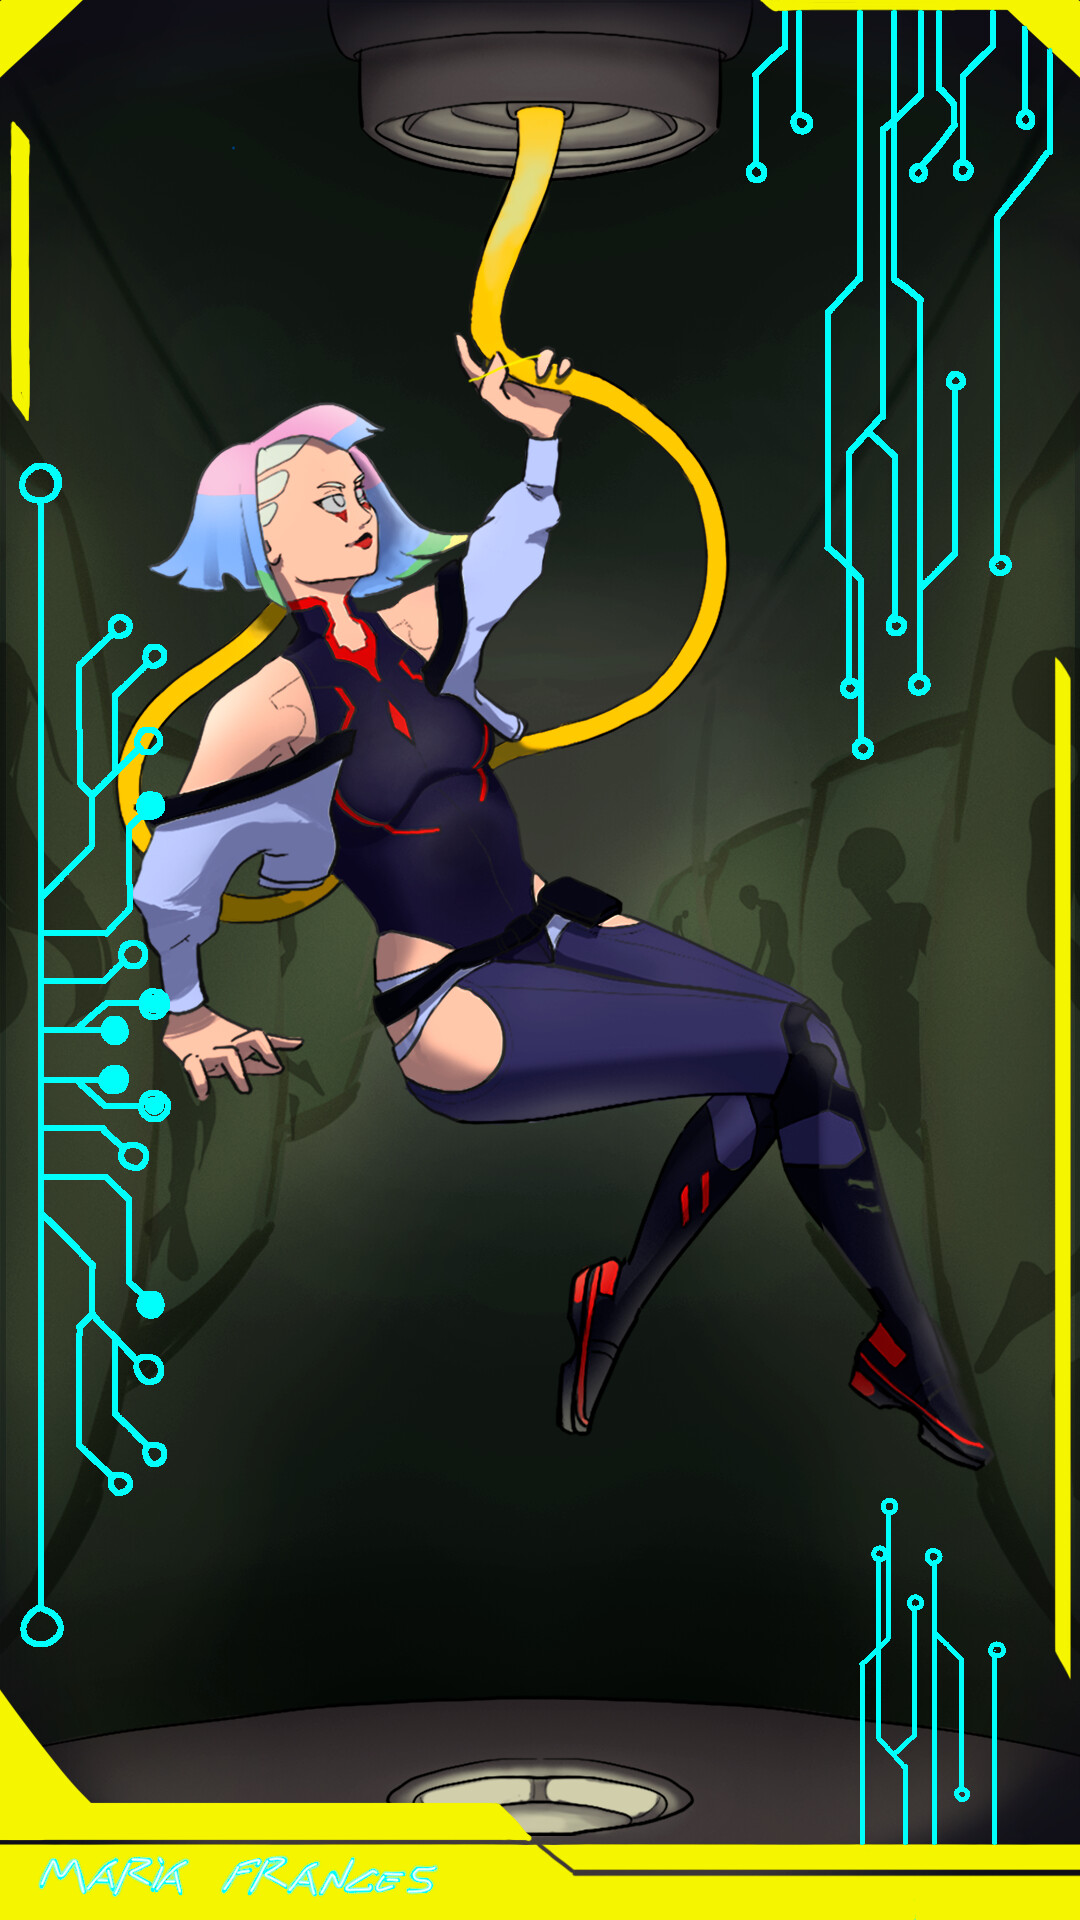 ArtStation - Lucy - Cyberpunk: Edgerunners